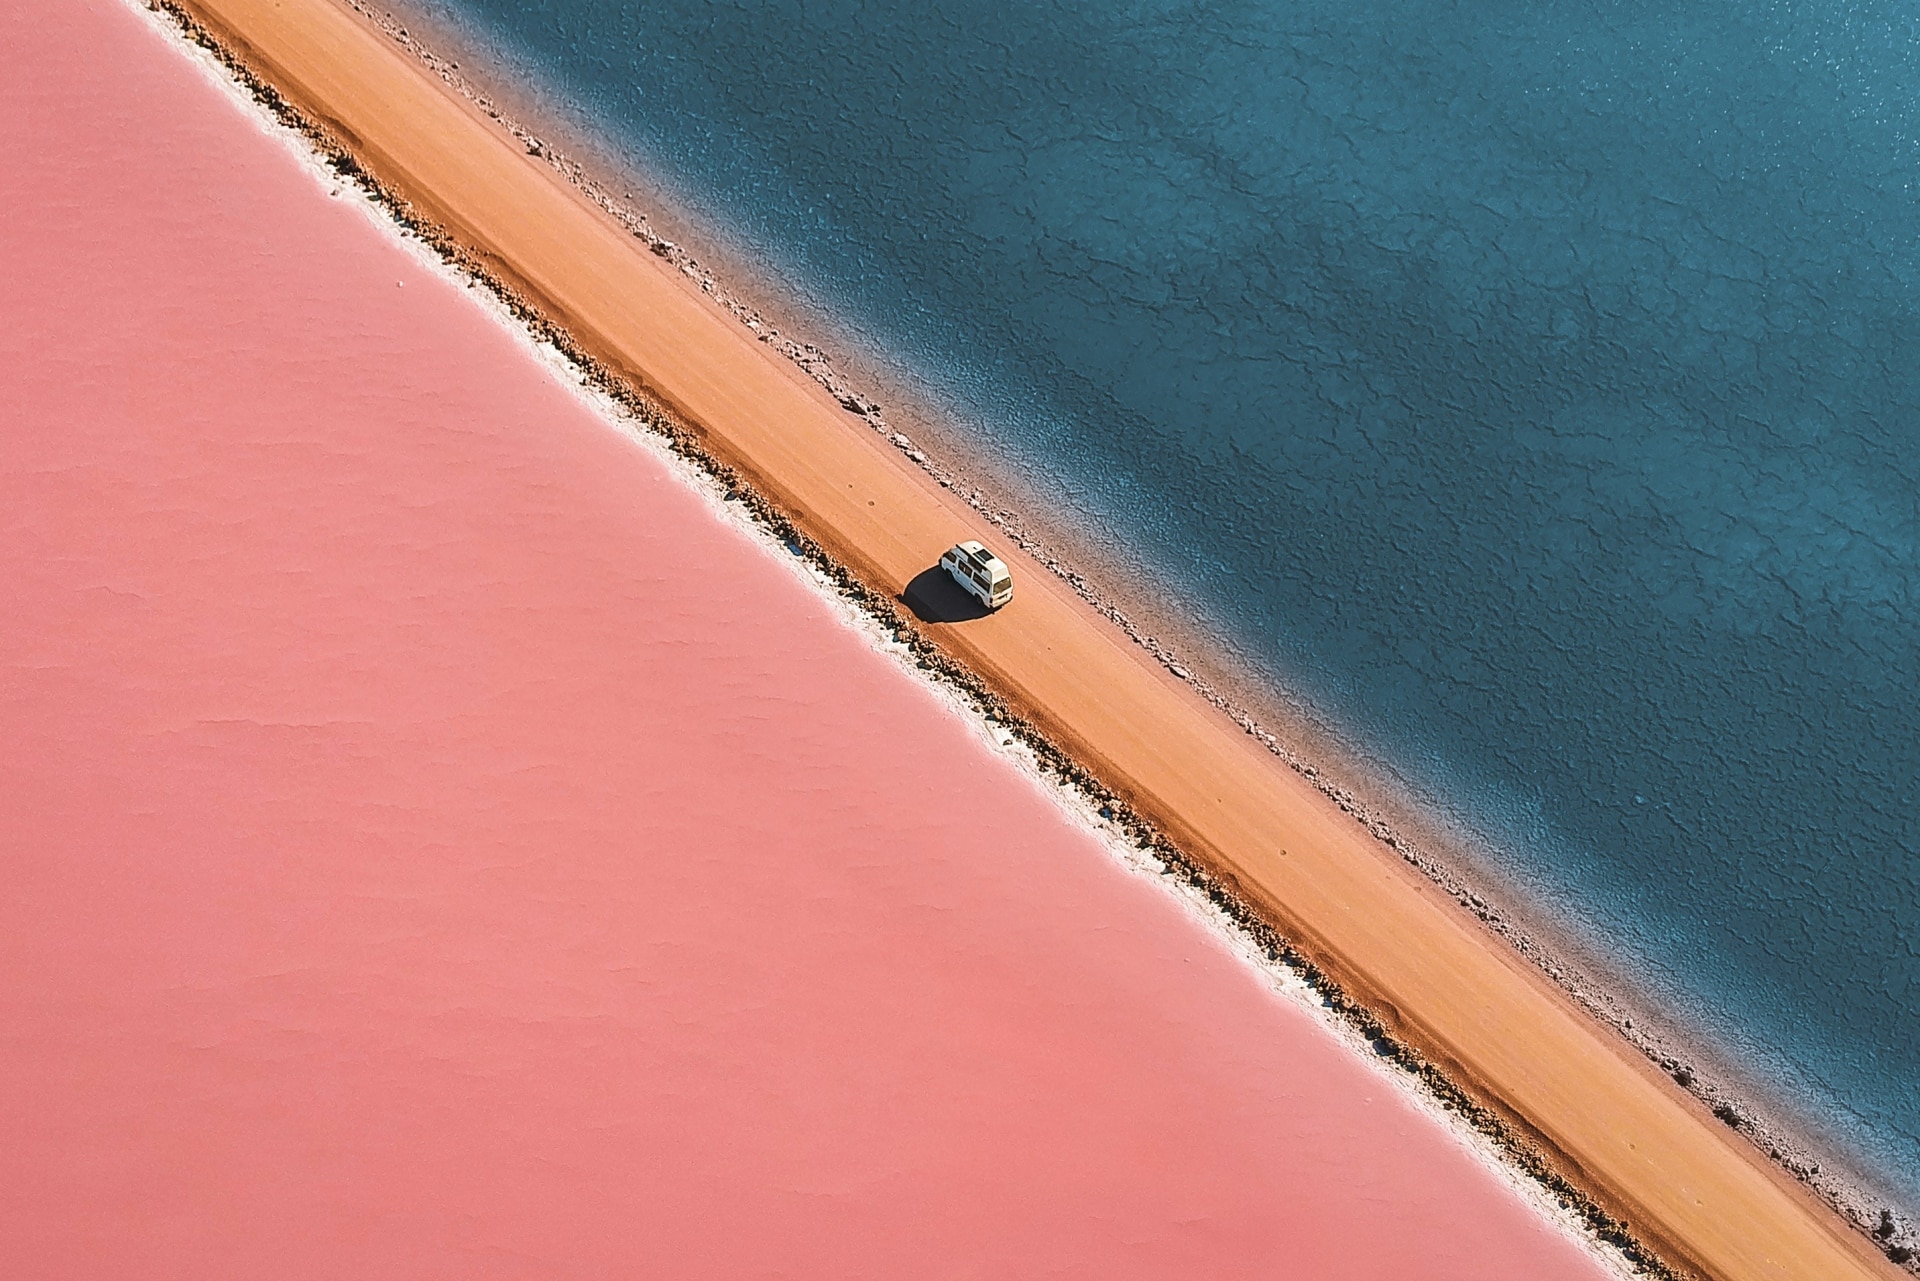 南オーストラリア州、エア半島、マクドネル湖 © Lyndon O'Keefe